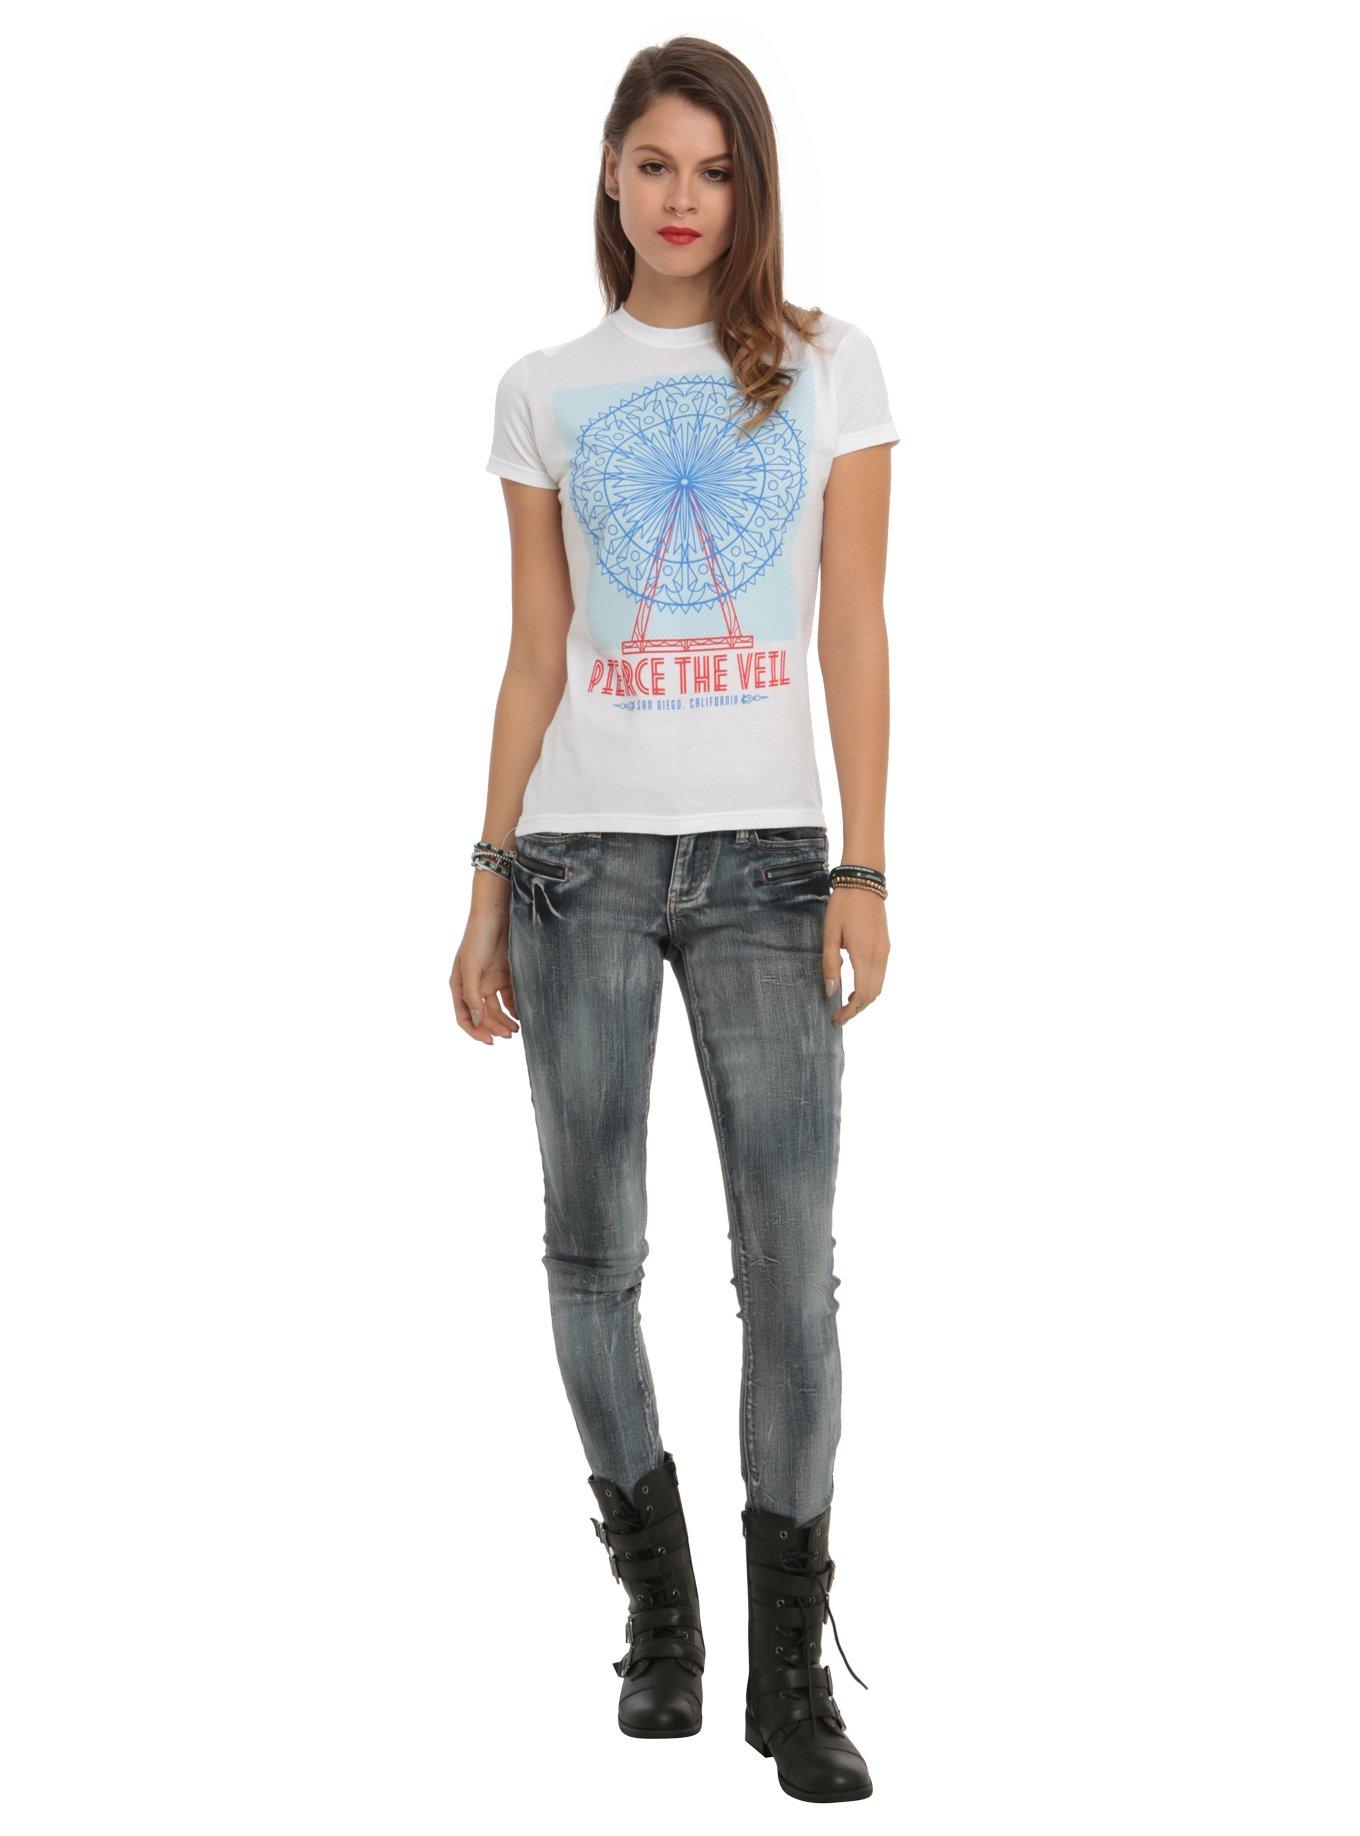 Pierce The Veil Ferris Wheel Girls T-Shirt, WHITE, alternate